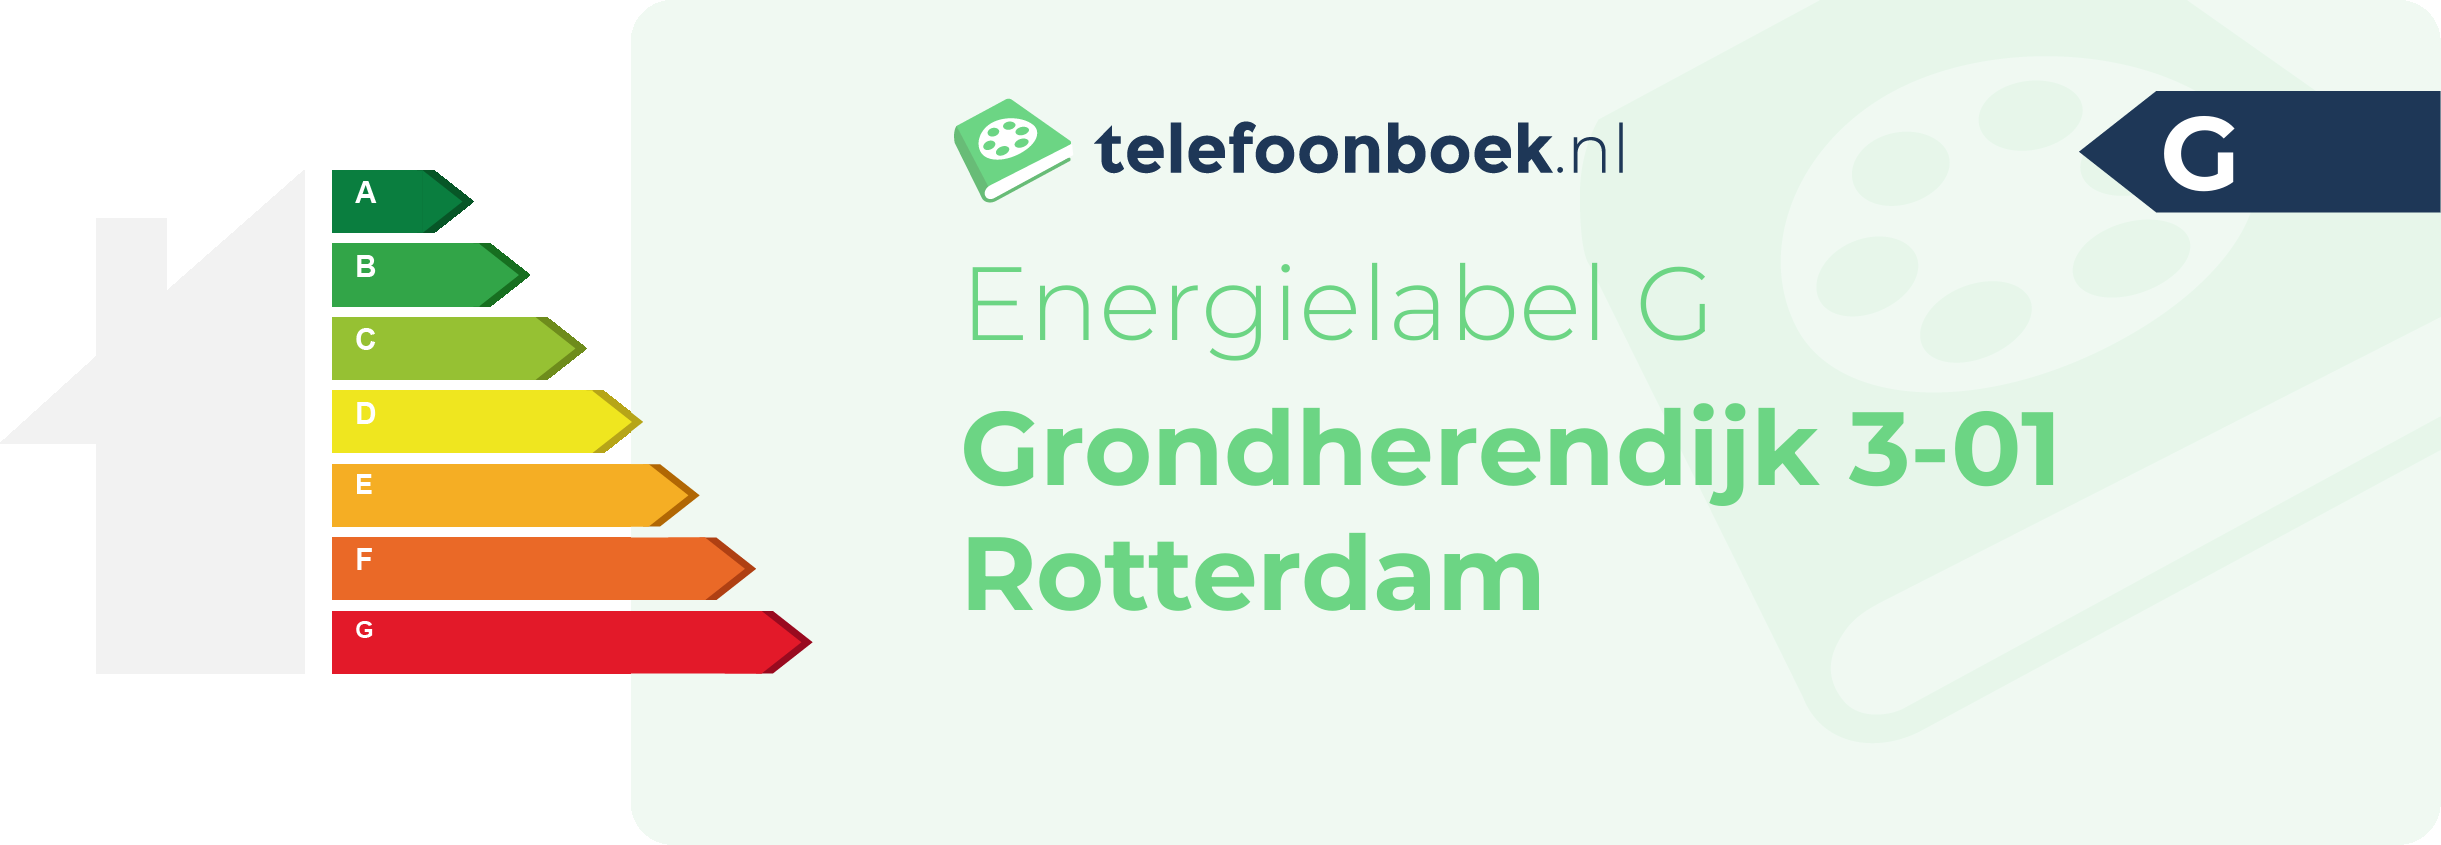 Energielabel Grondherendijk 3-01 Rotterdam